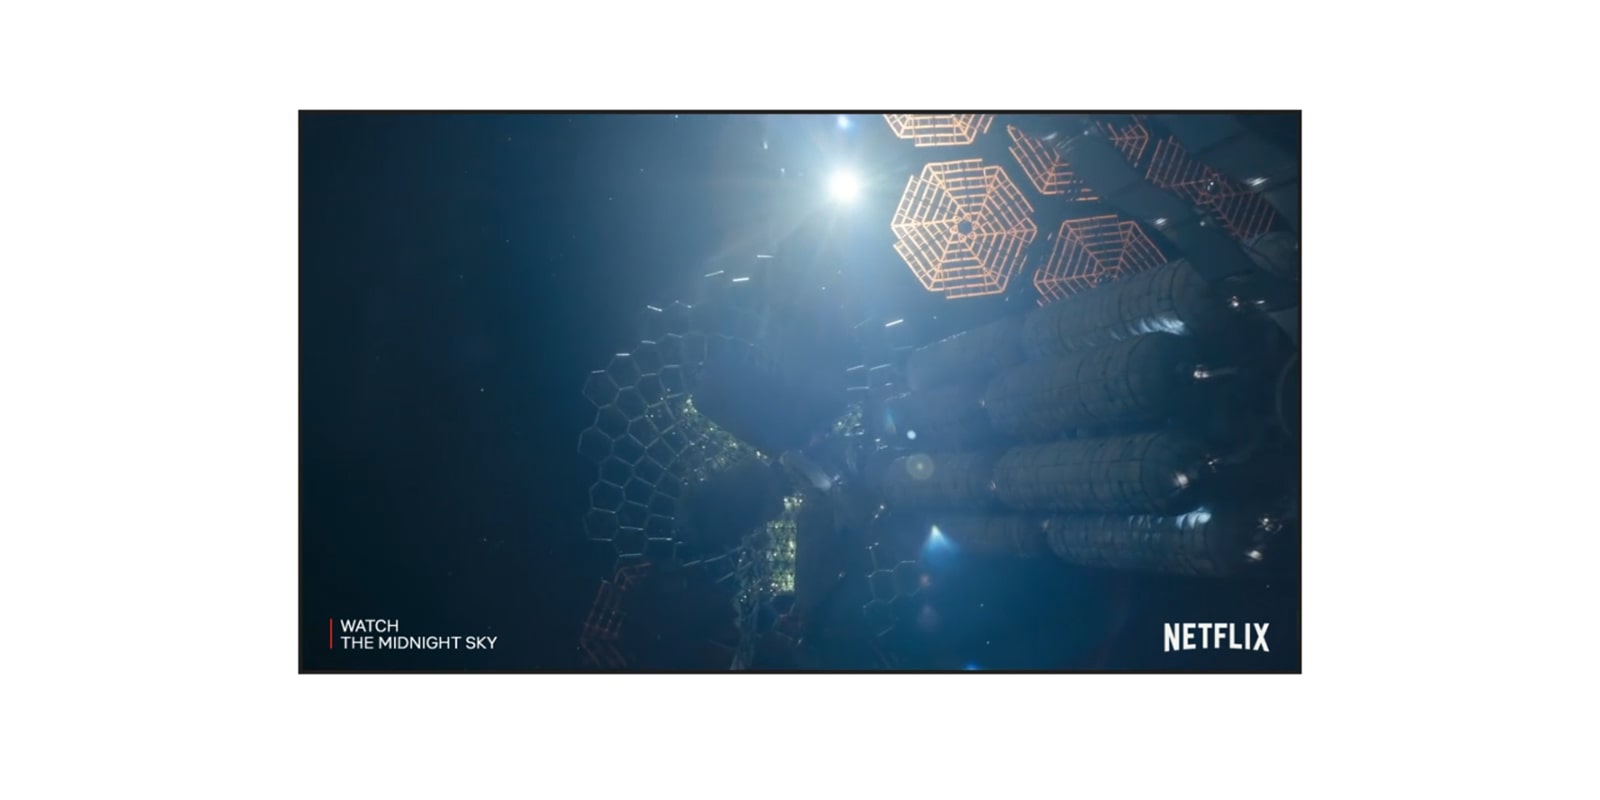 Экран телевизора с трейлером фильма «Полночное небо» на Netflix (просмотр видео).